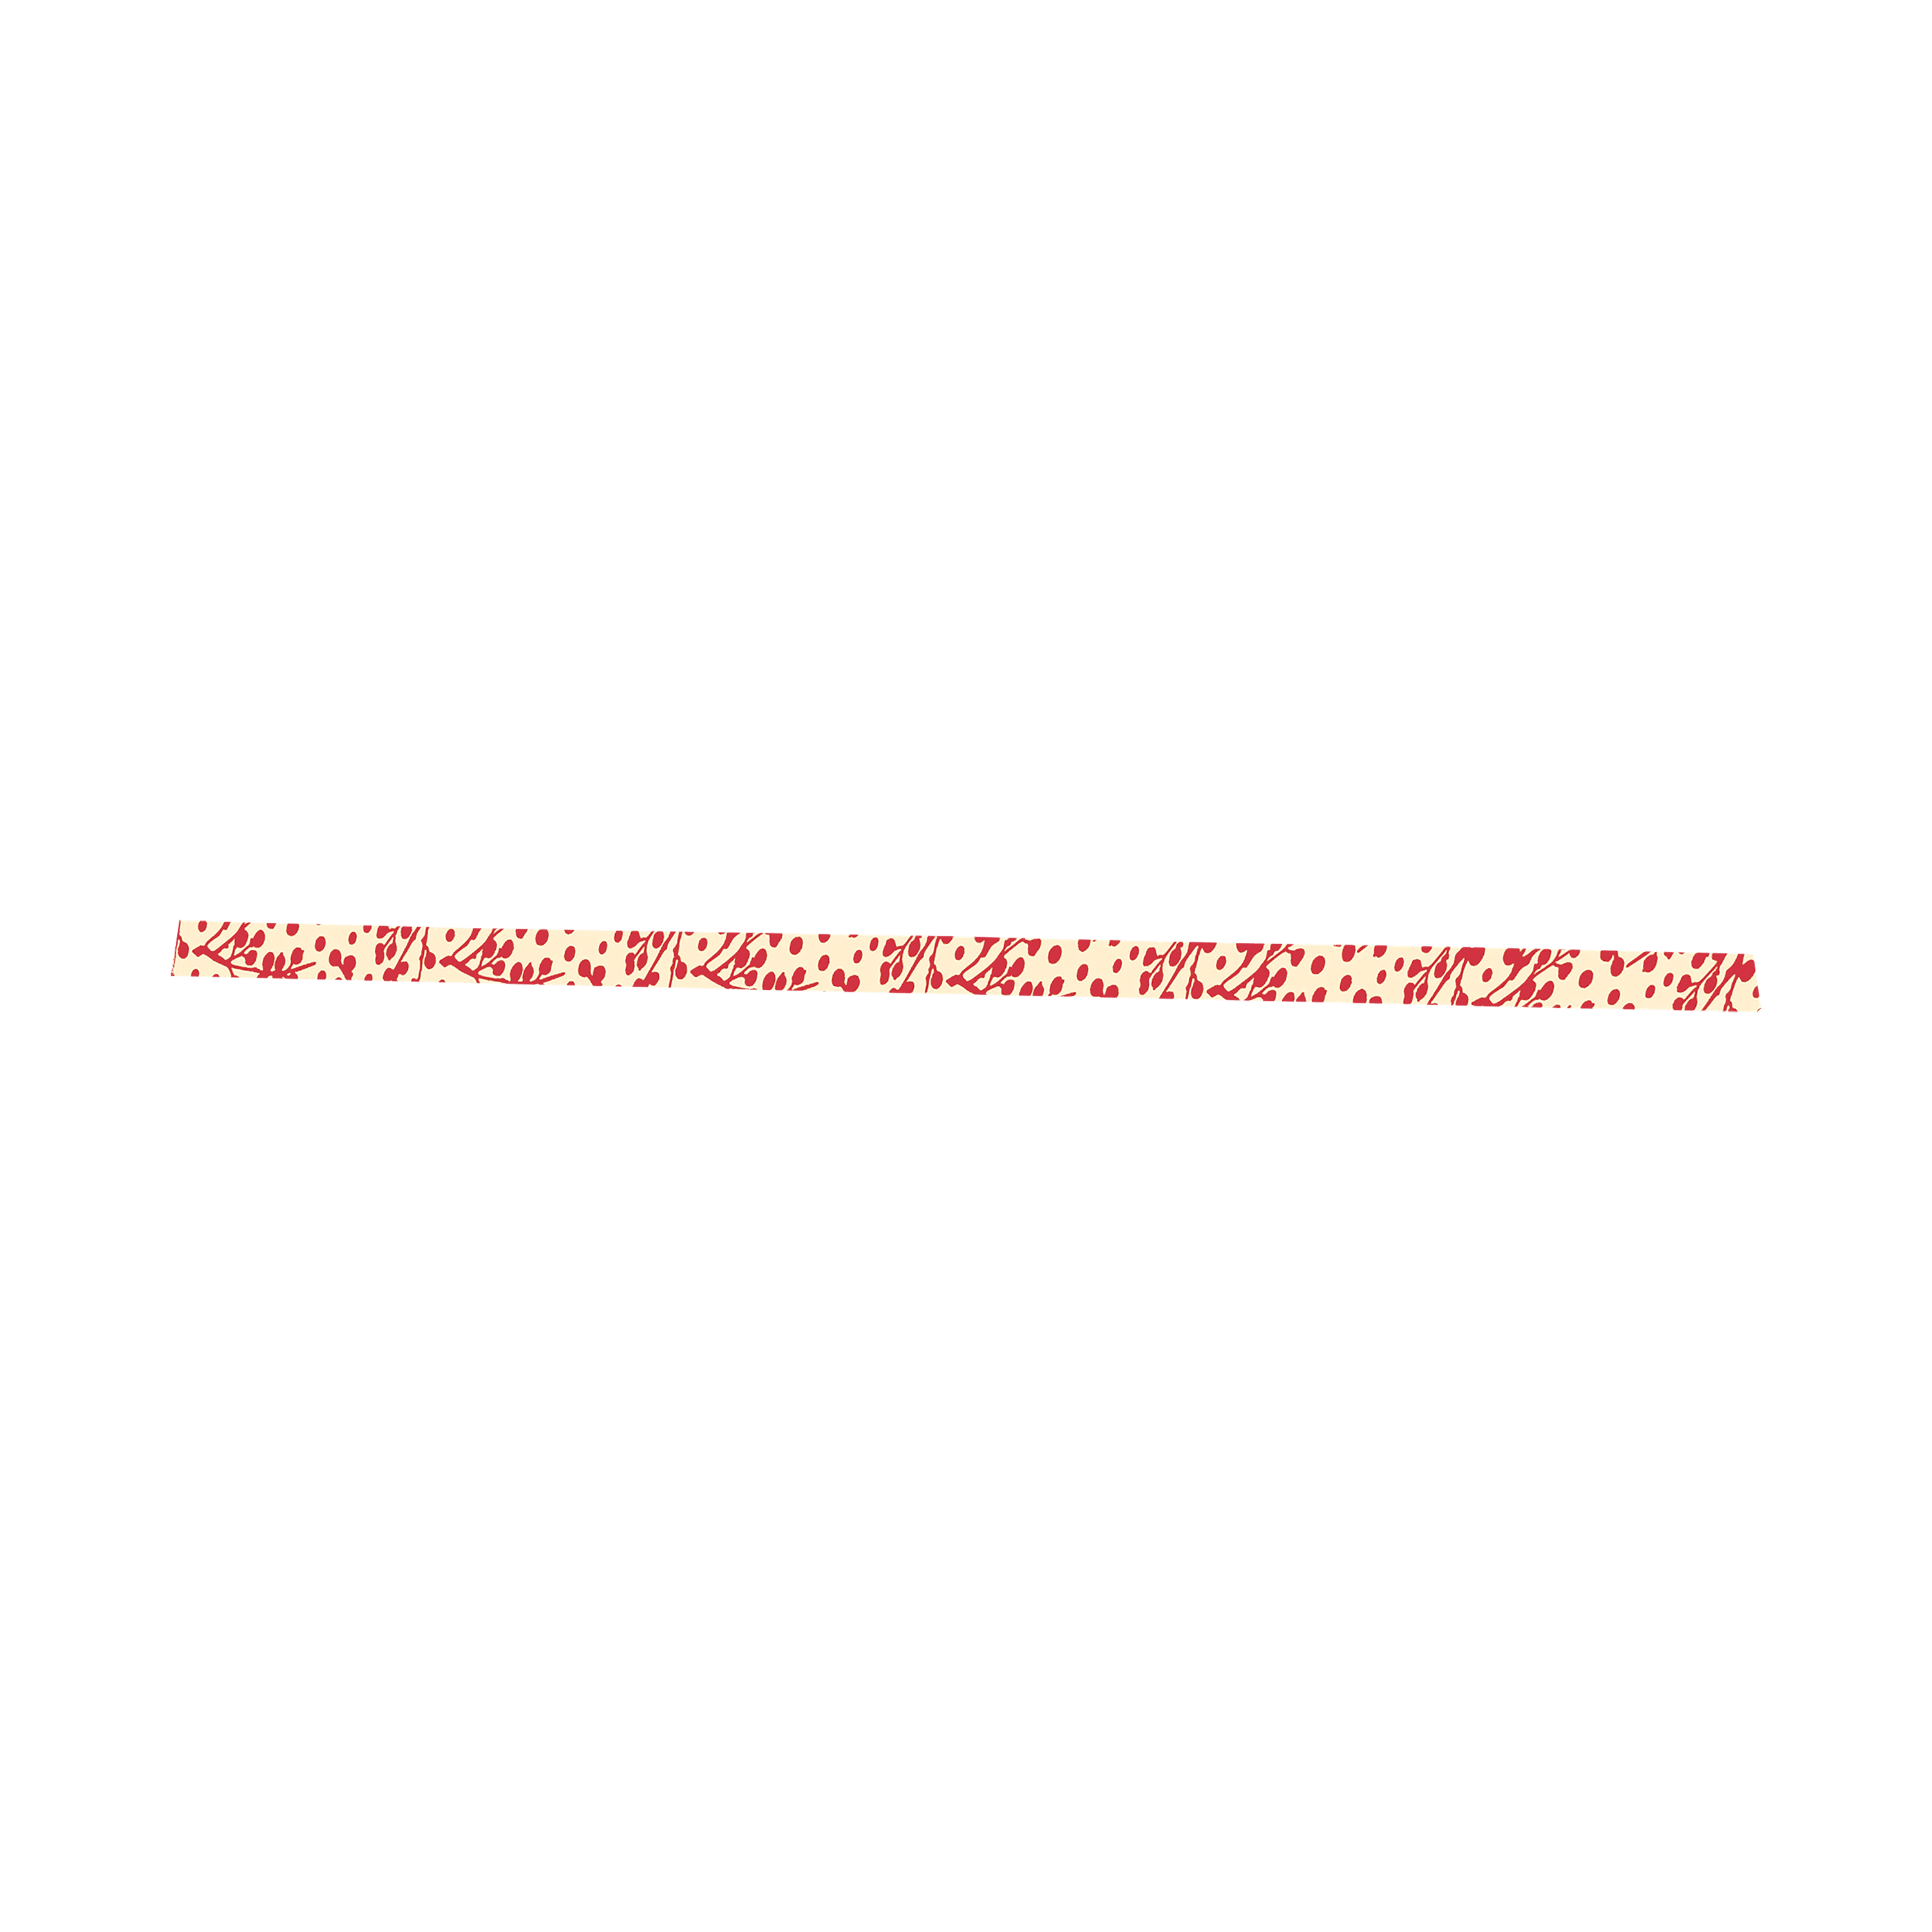 Fuchsia Blossom Stick - Savory Gourmet